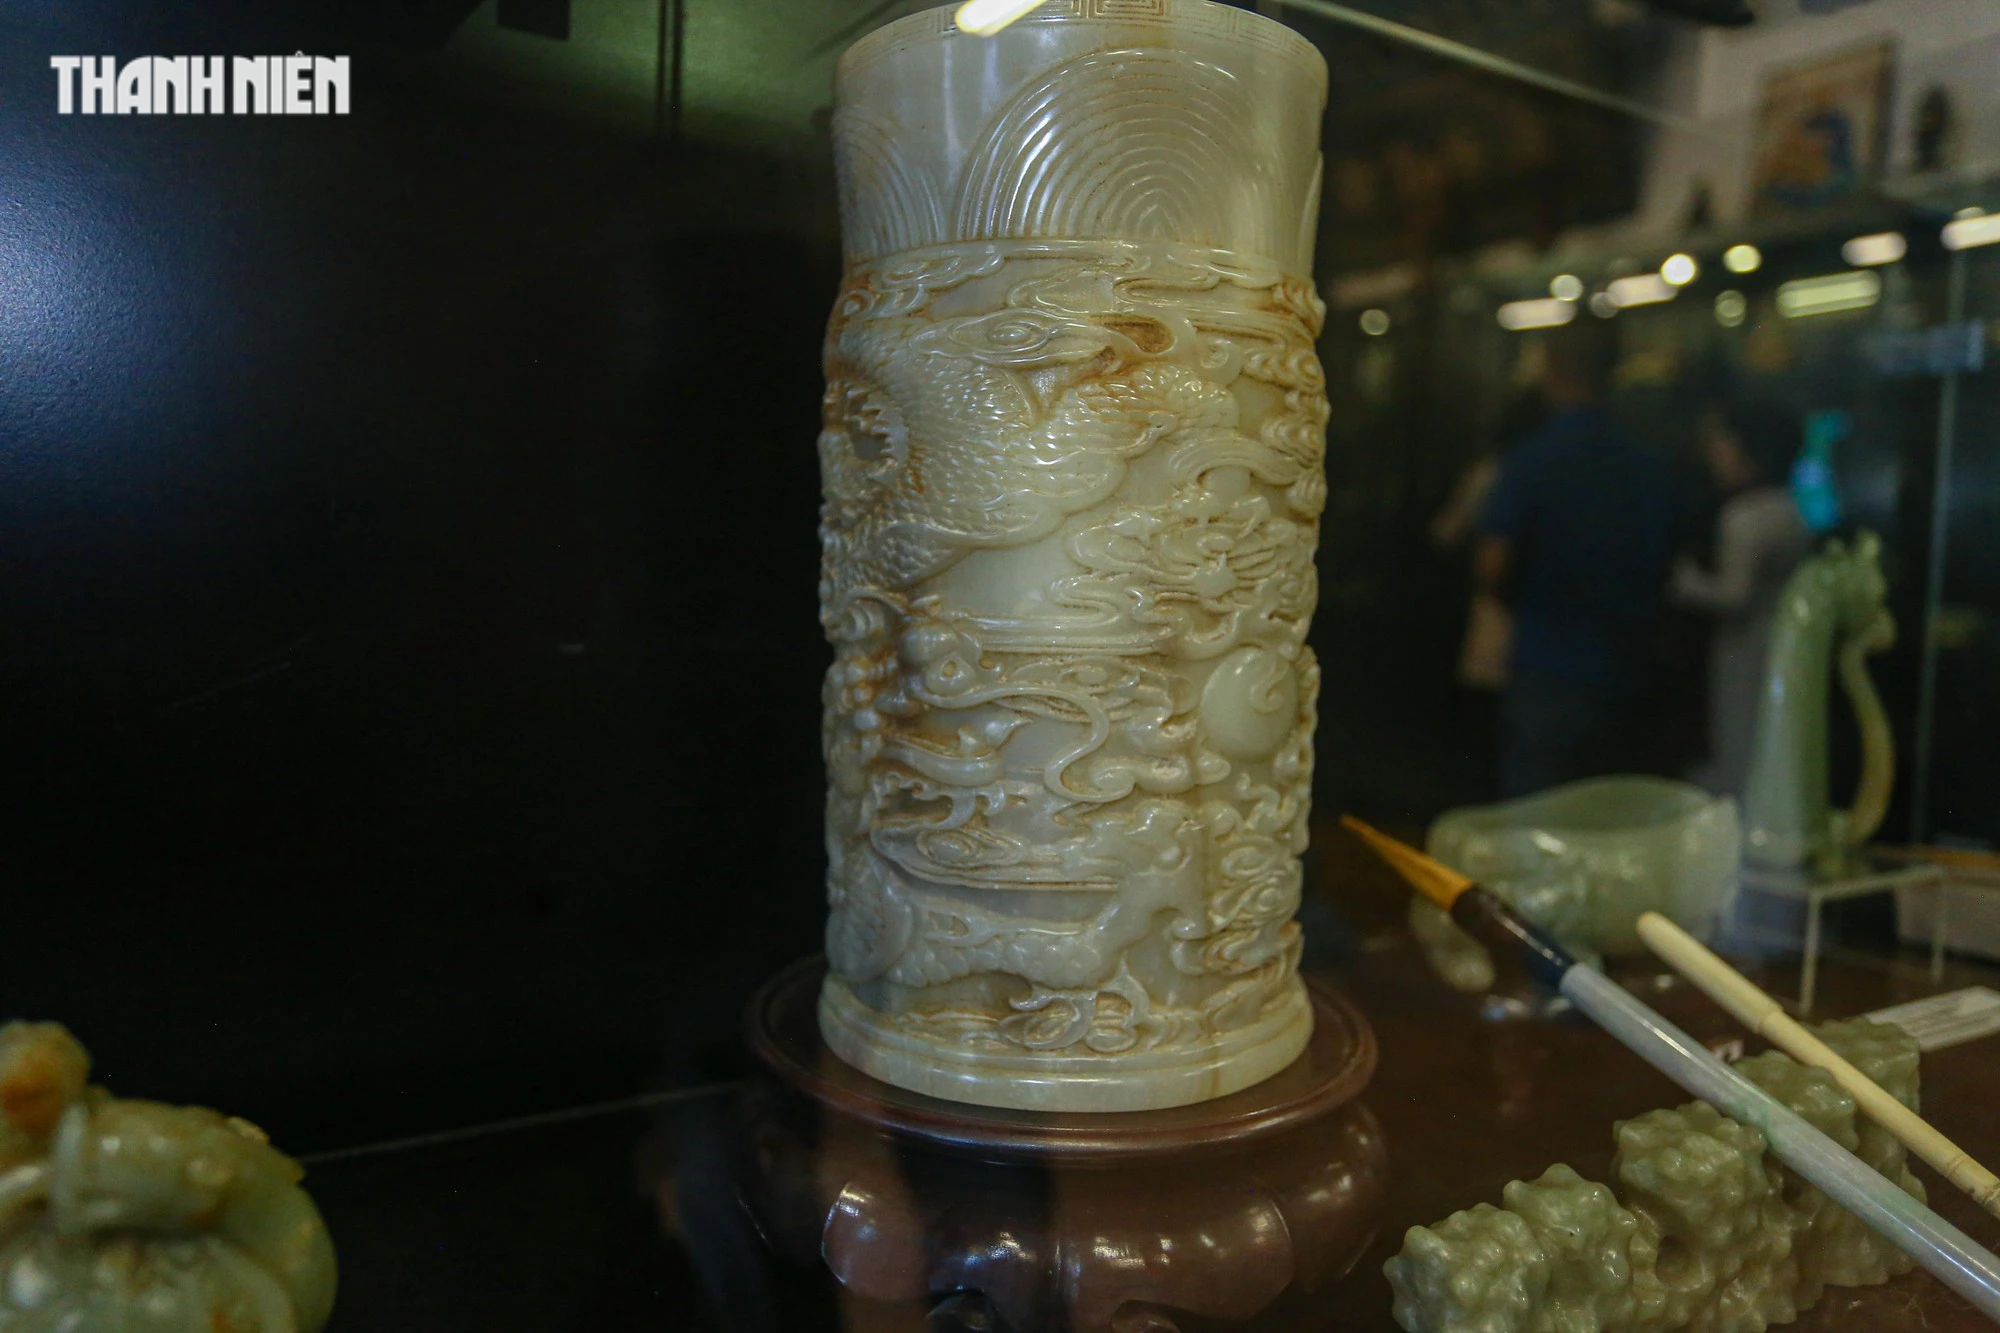 Chiêm ngưỡng hơn 70 món ngọc quý thời Nguyễn đang được trưng bày tại Huế - Ảnh 9.